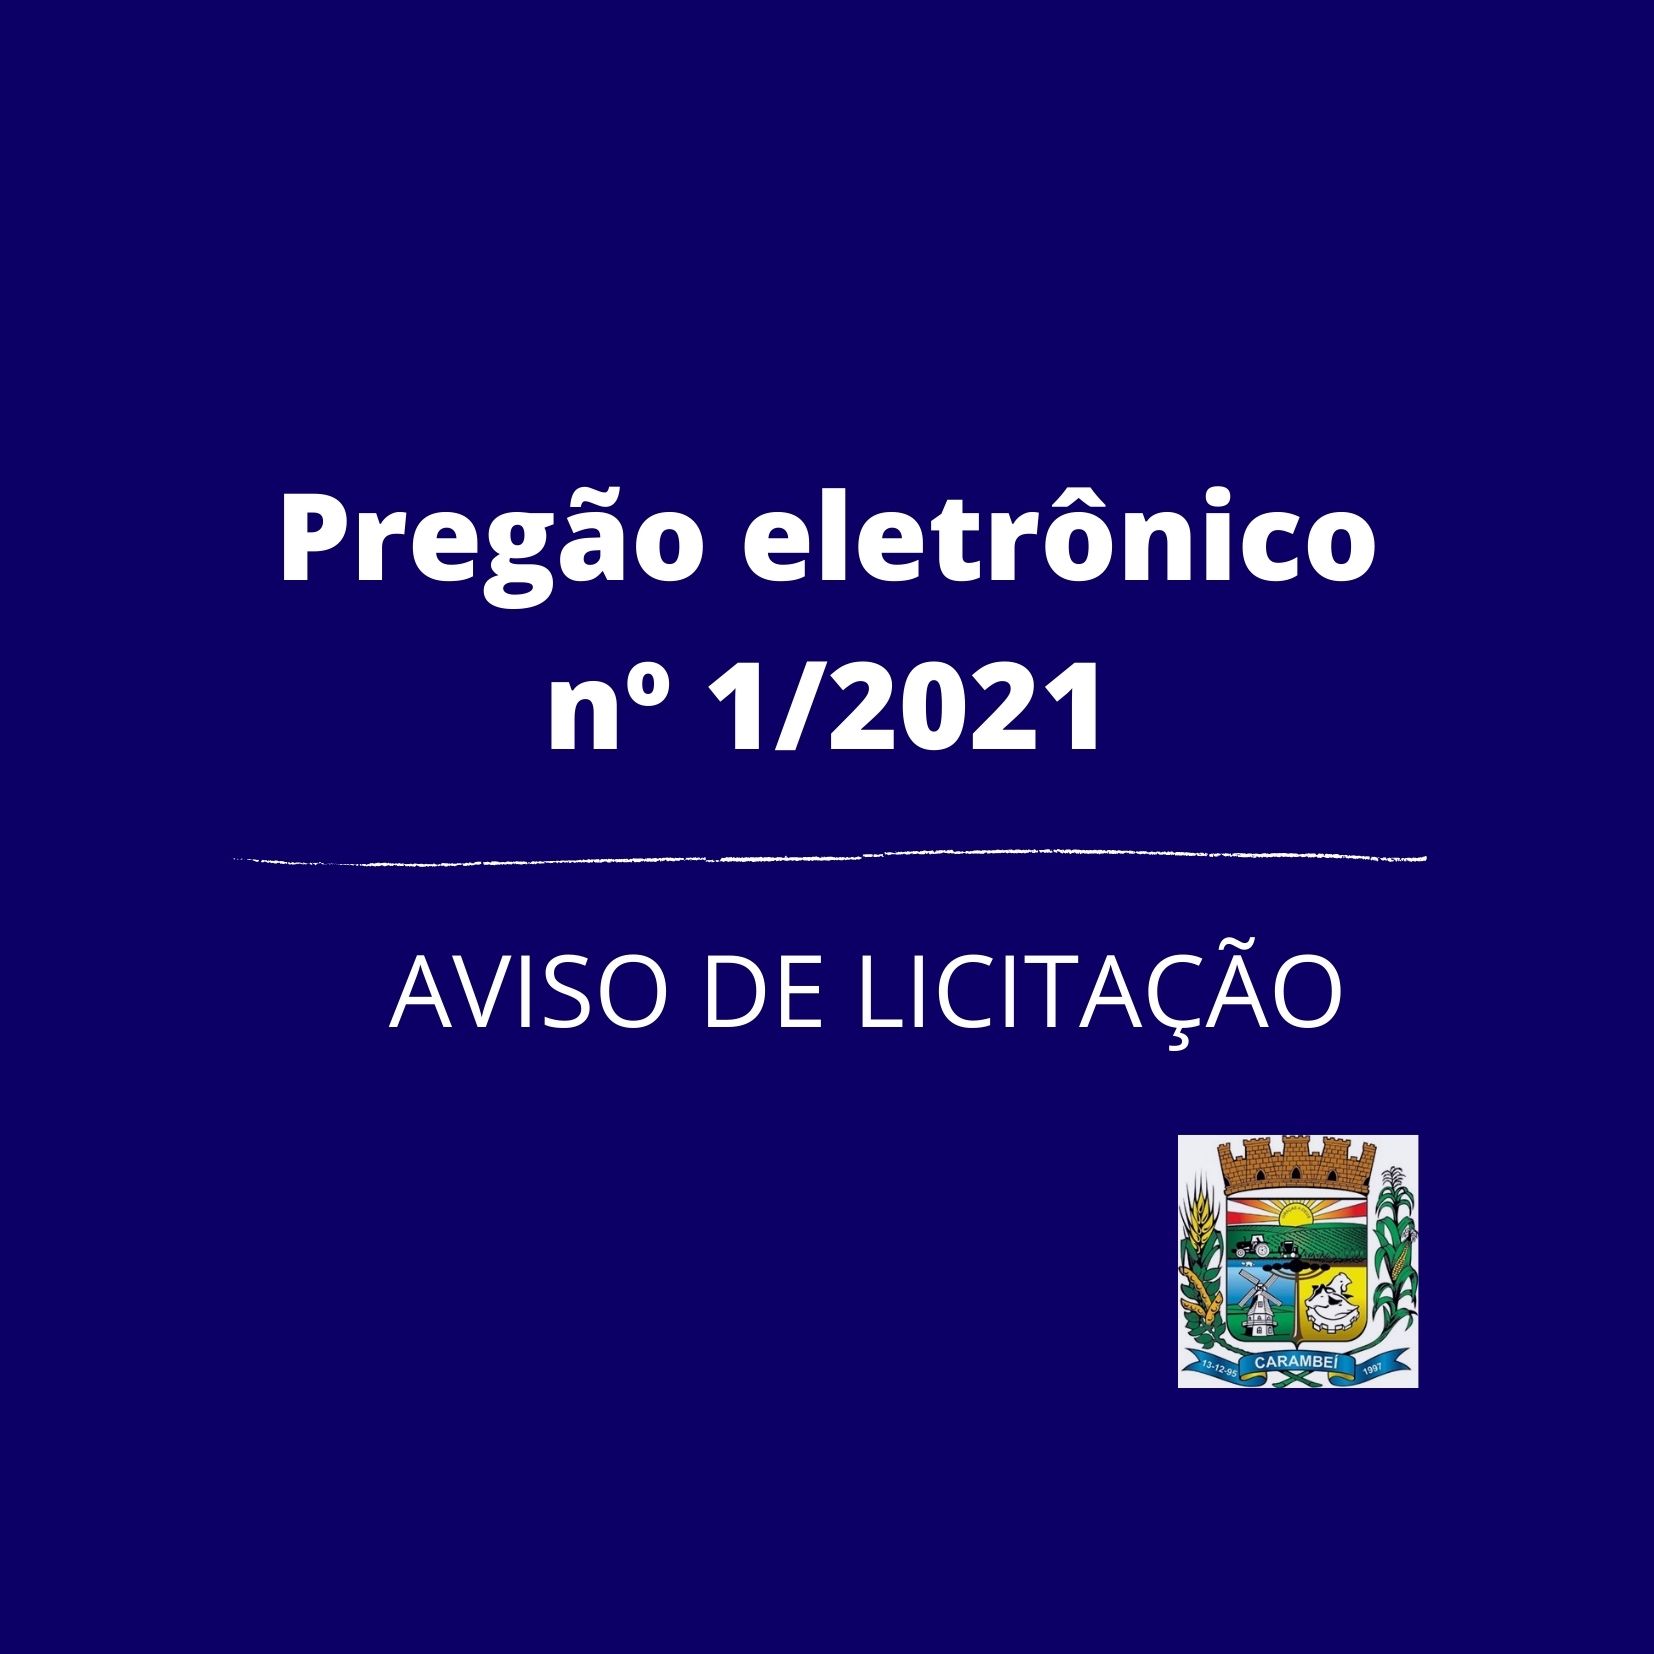 AVISO DE LICITAÇÃO PREGÃO ELETRÔNICO Nº 1/2021